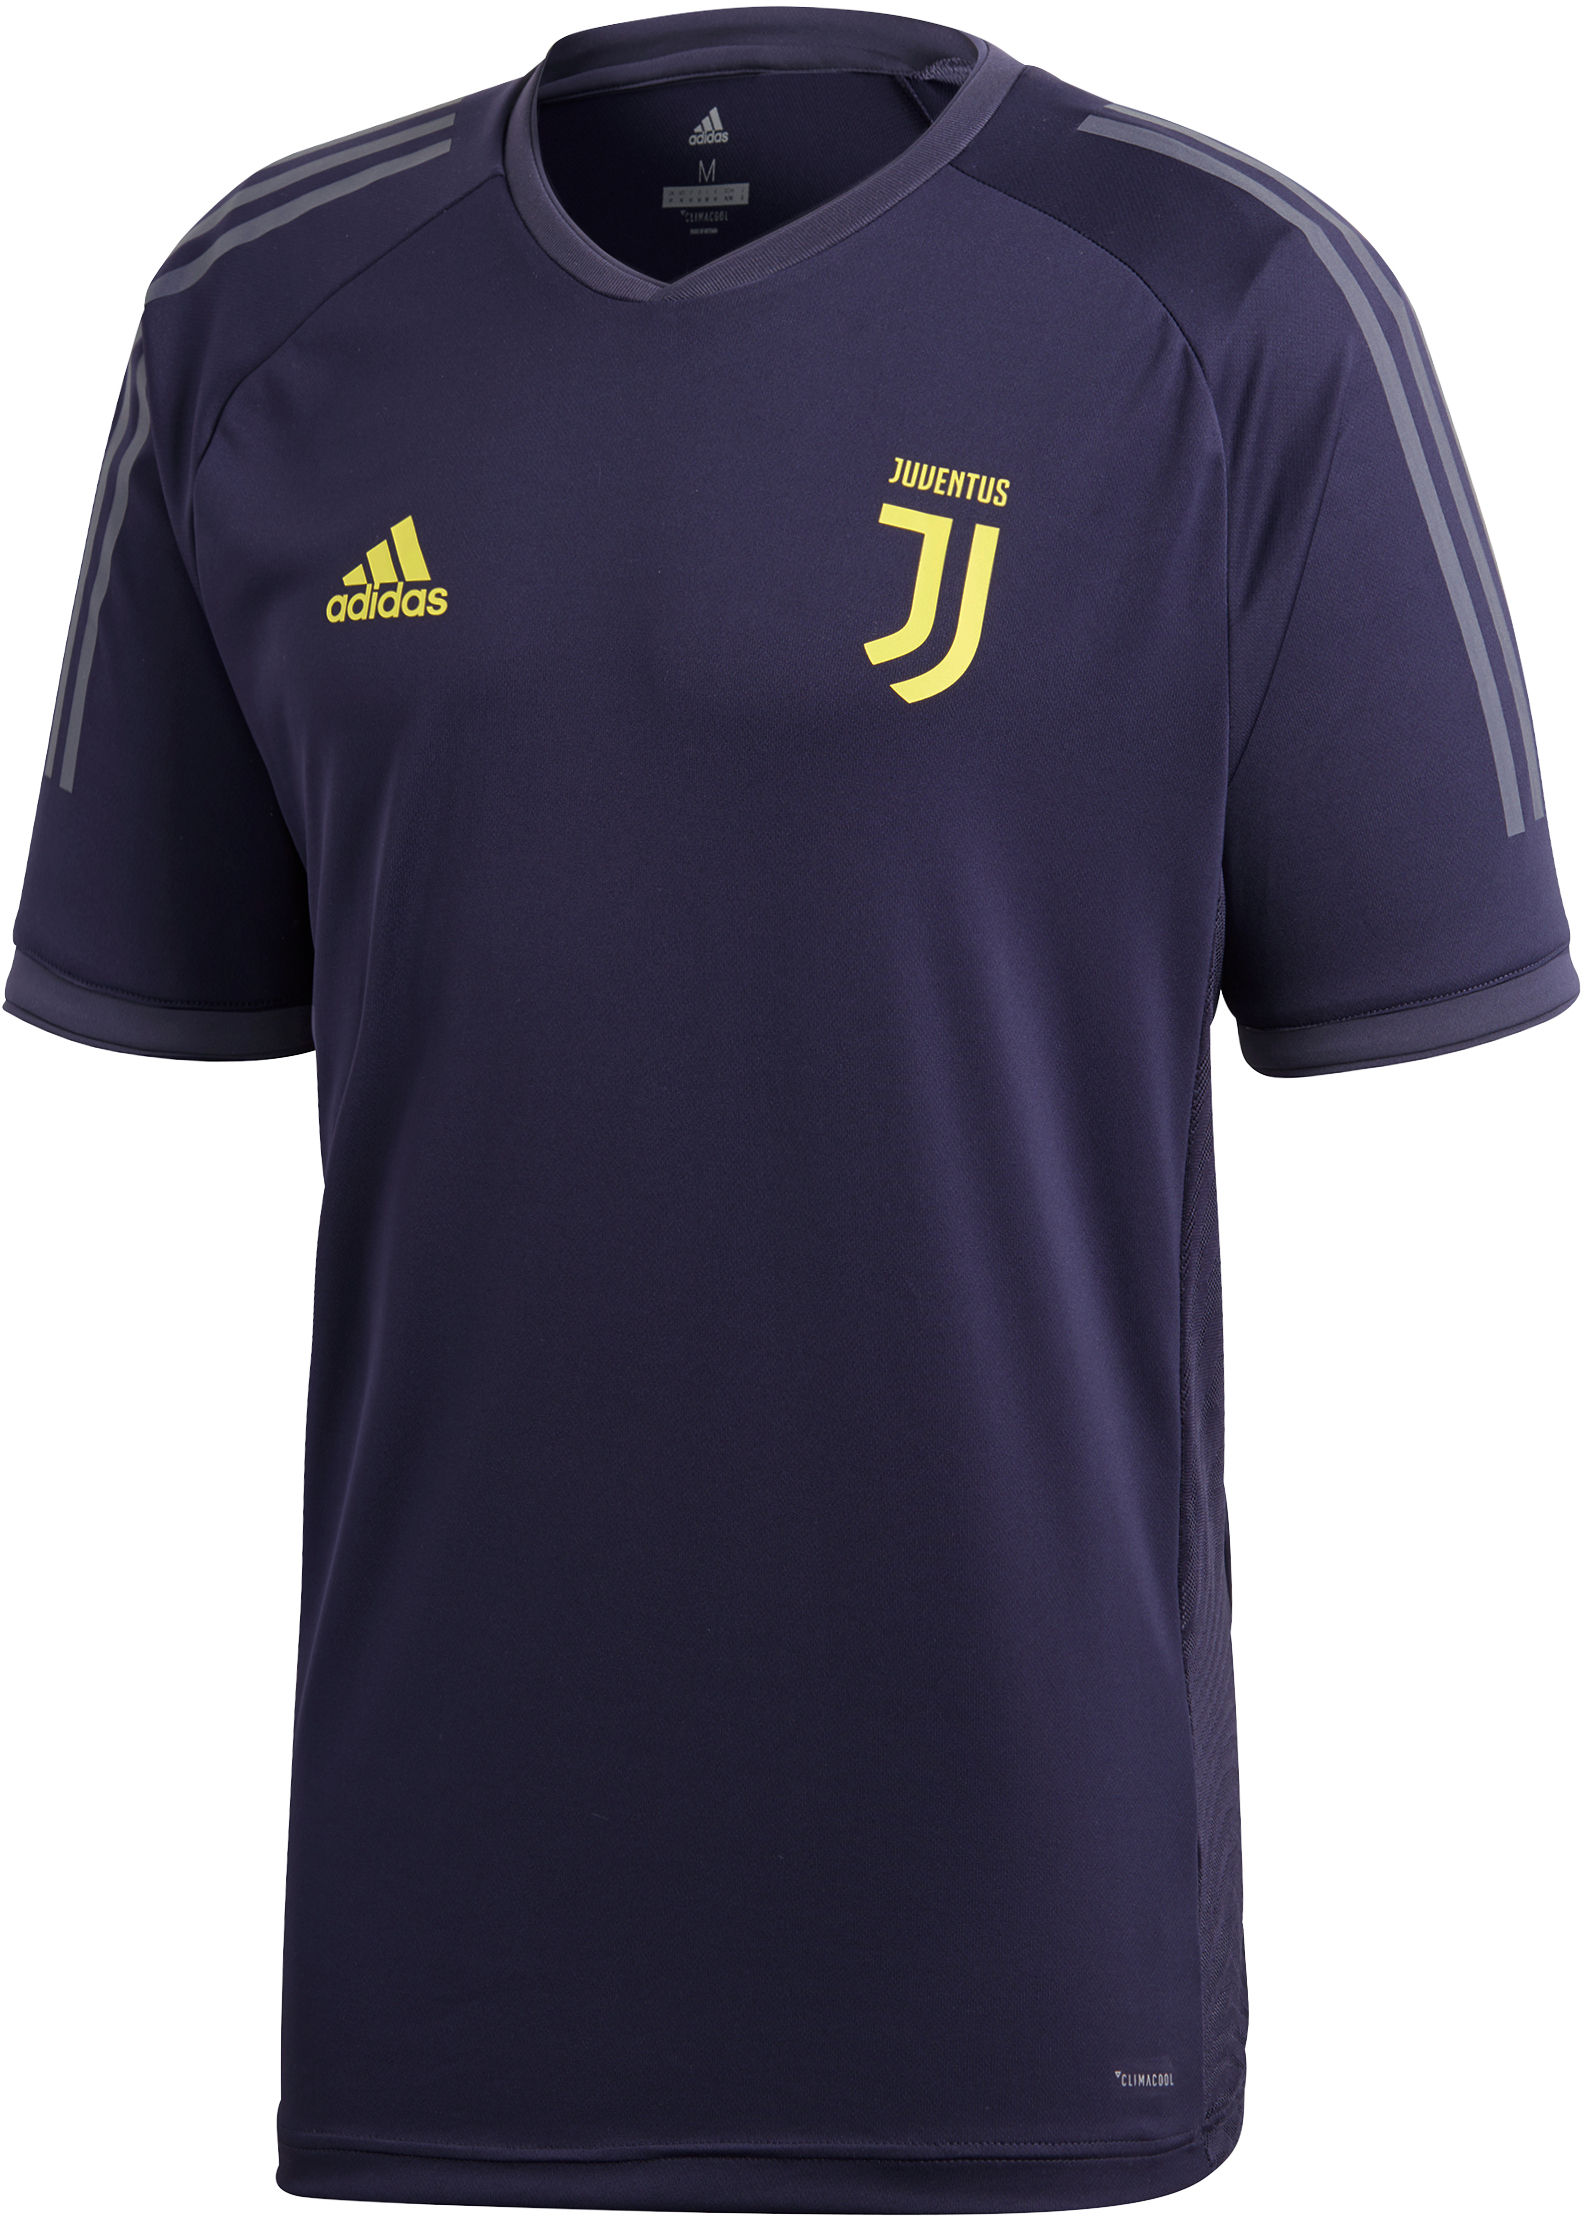 Camisa adidas Juventus Ultimate Training Jersey